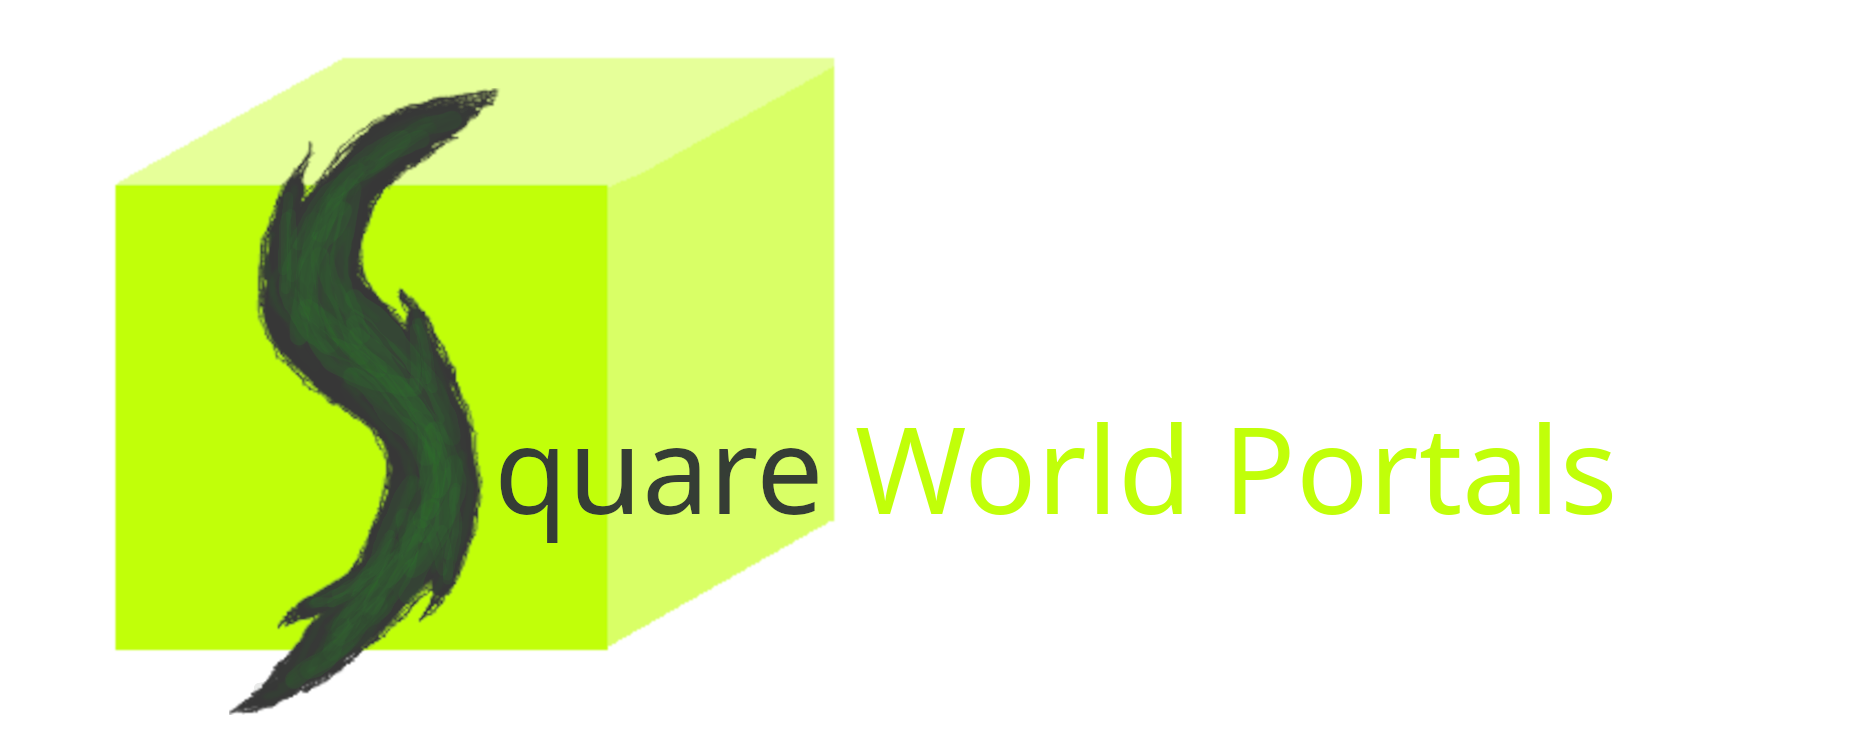 Square World Portals